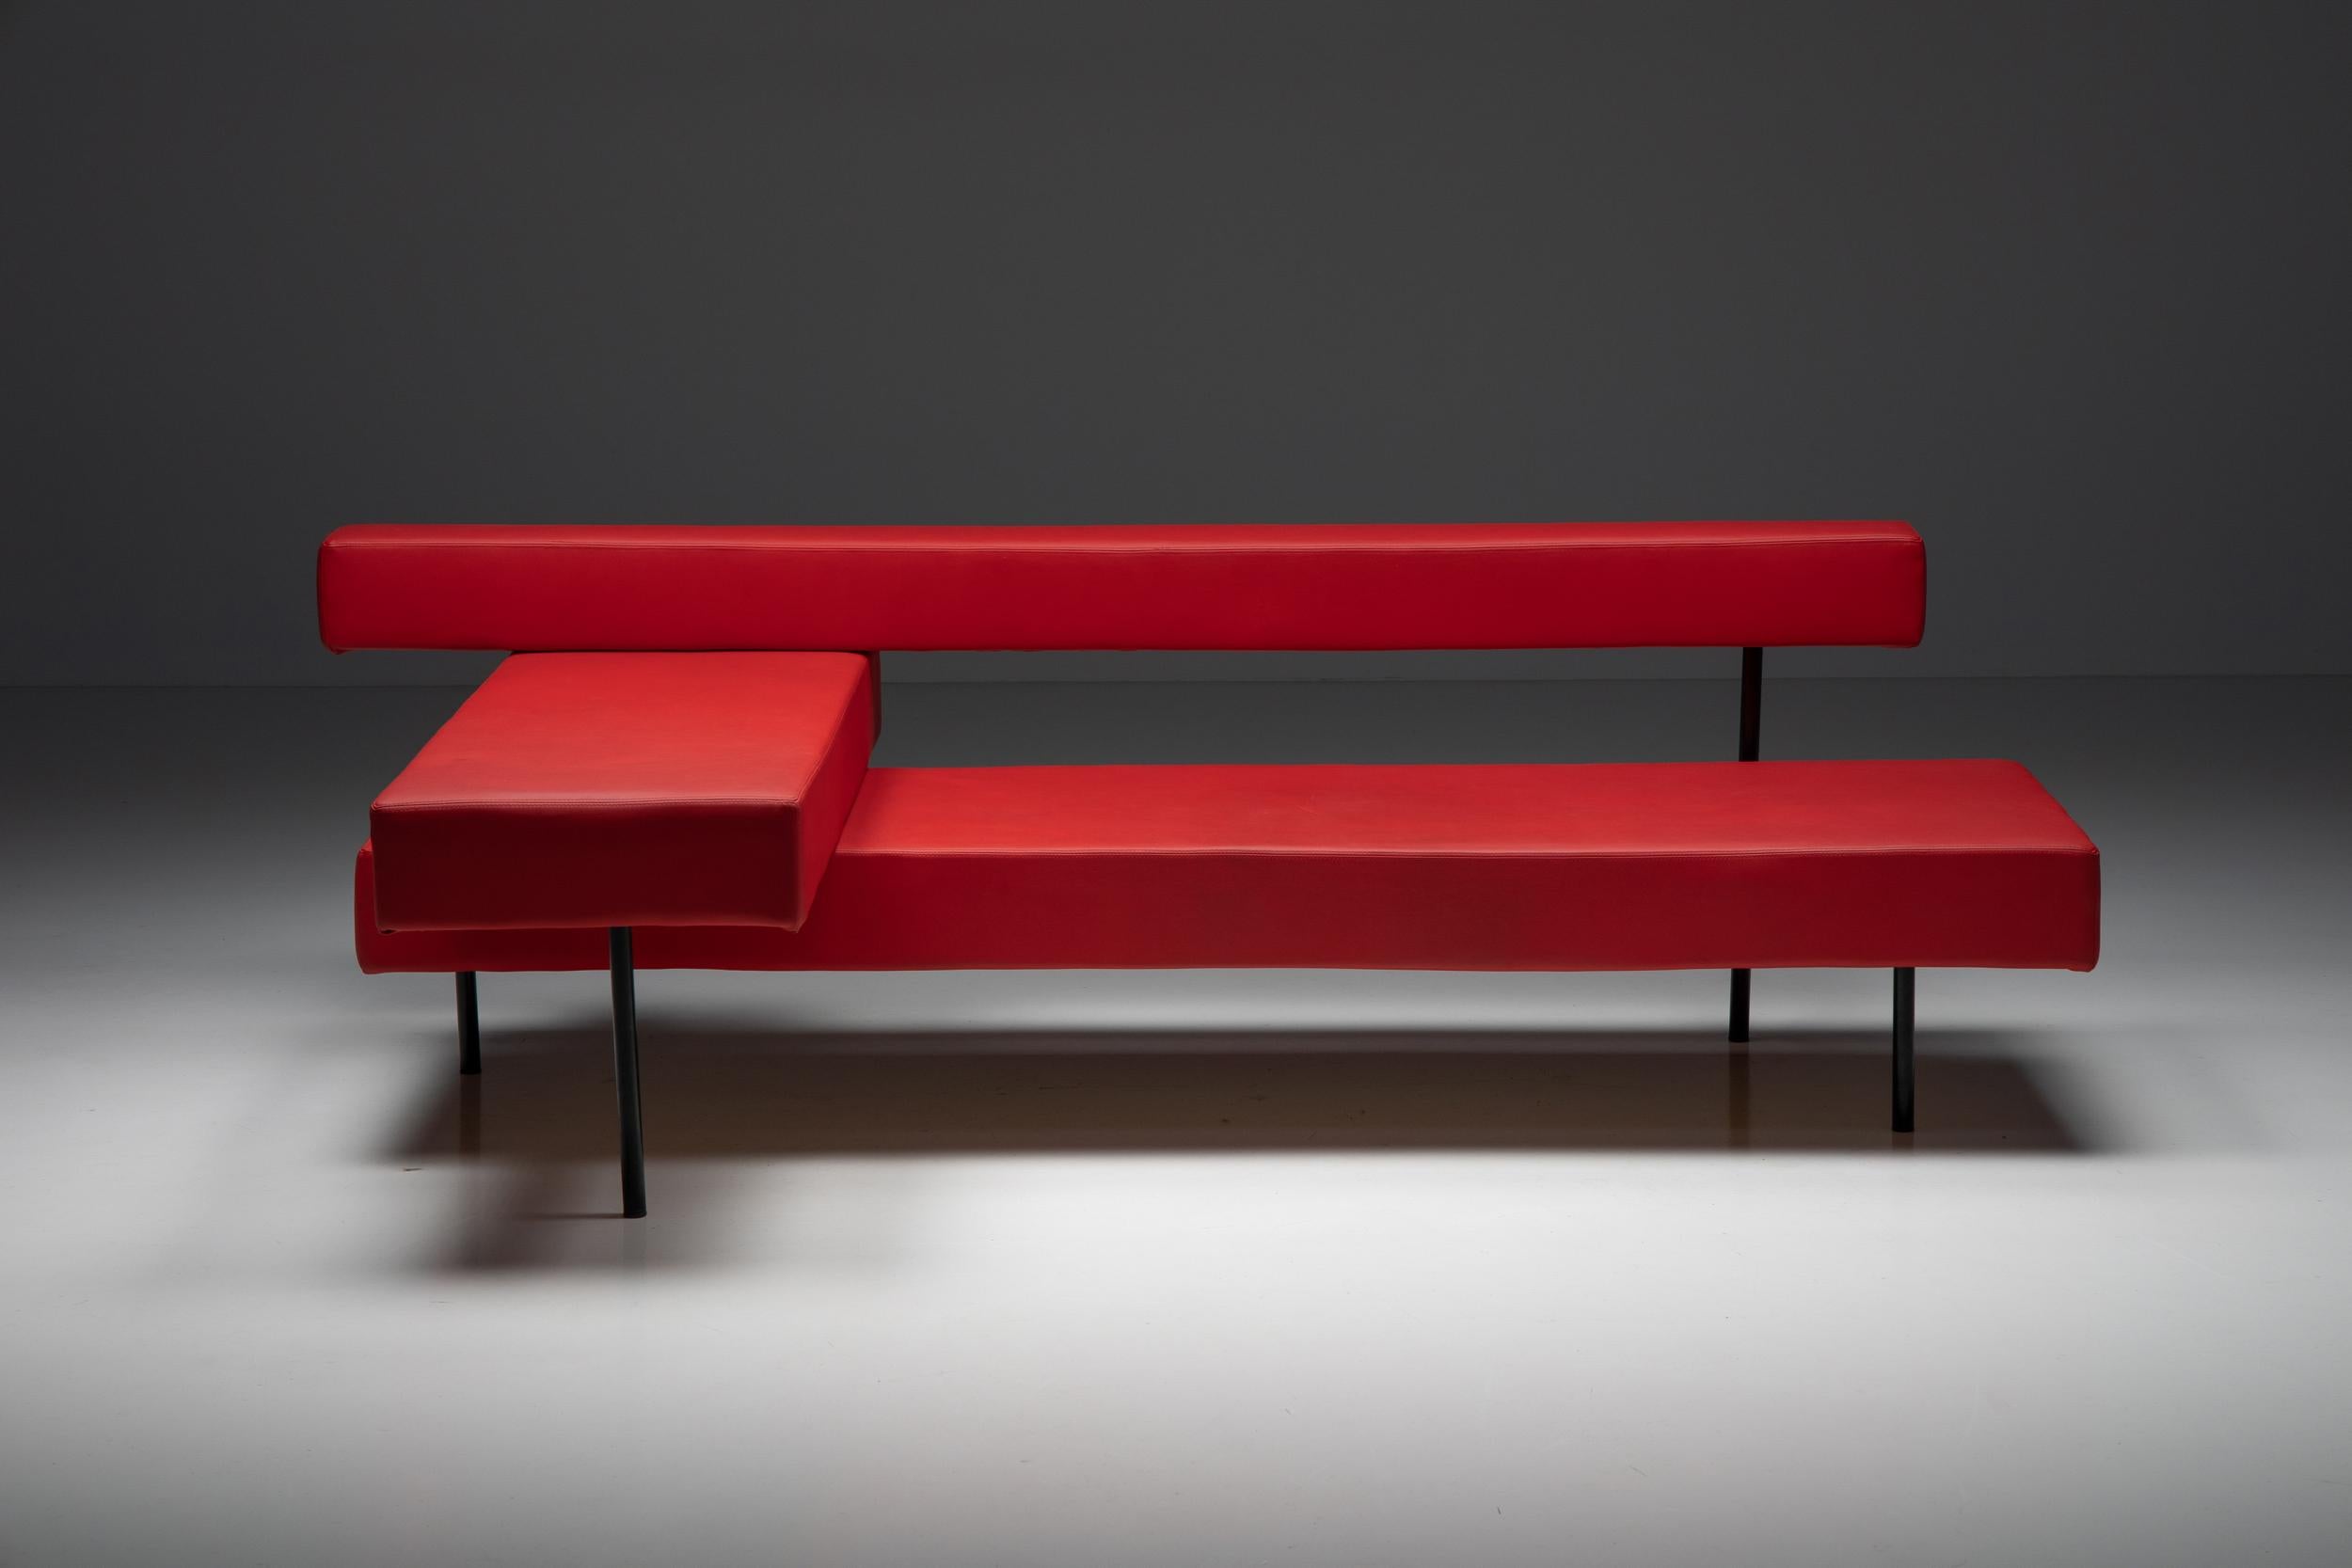 Postmodernes rechteckiges rotes Architektursofa, belgisches Design, einzigartiger Prototyp, frühes 21. Jahrhundert, Kunstleder

Dieser postmoderne architektonische Prototyp besteht aus einem Metallgestell und drei roten Kunstlederelementen, die